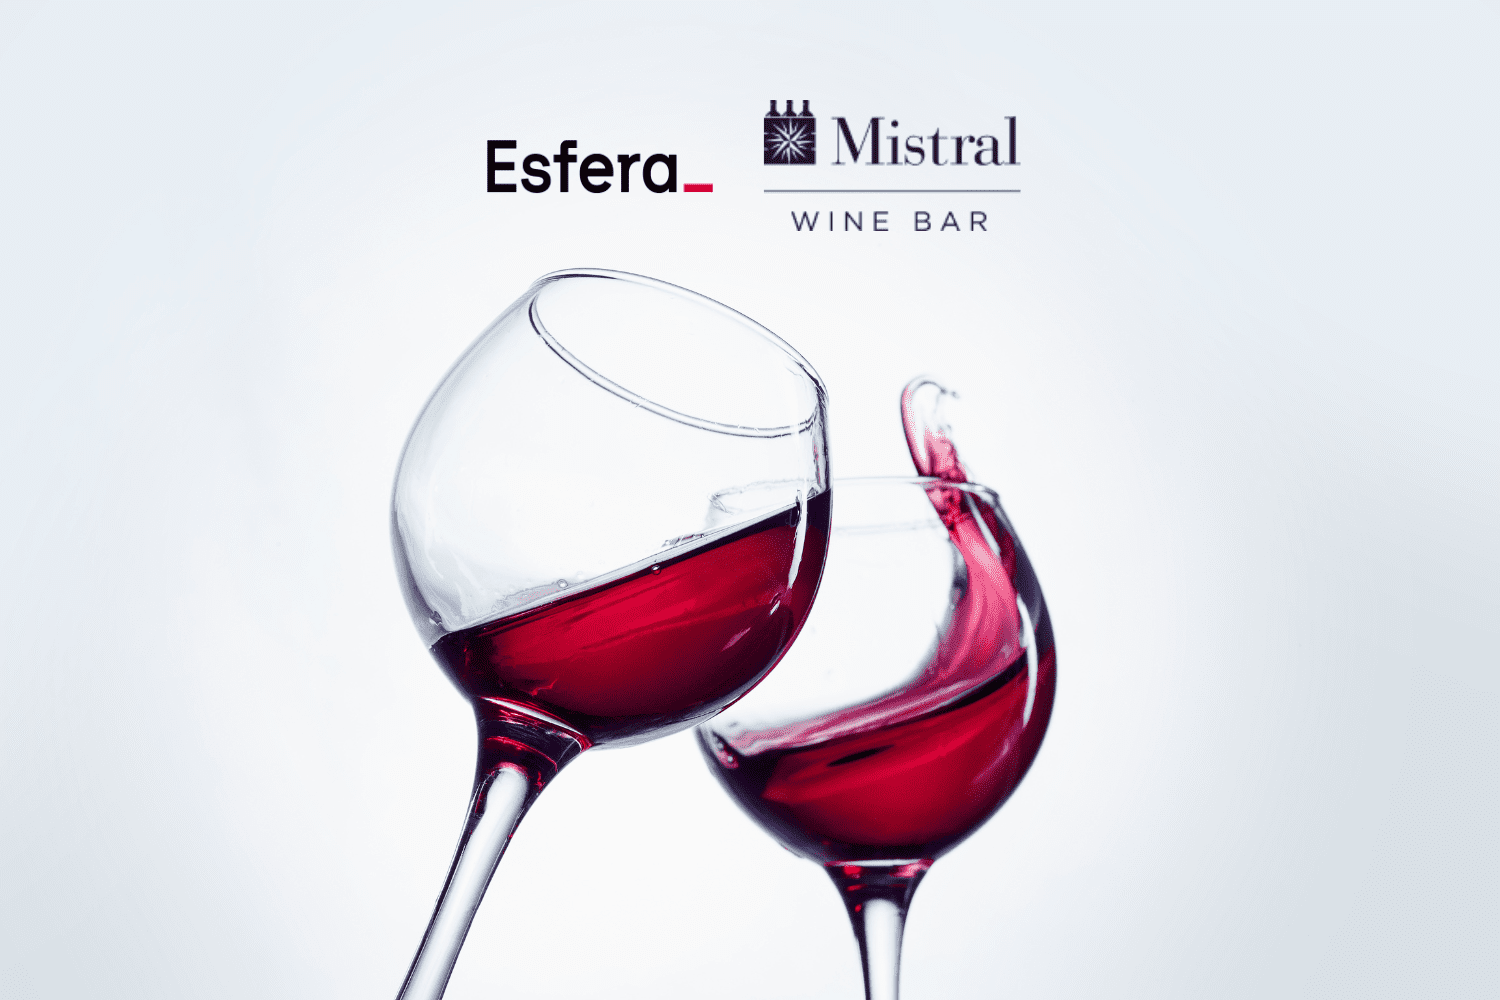 Duas taças de vinho com logo Esfera e Mistral